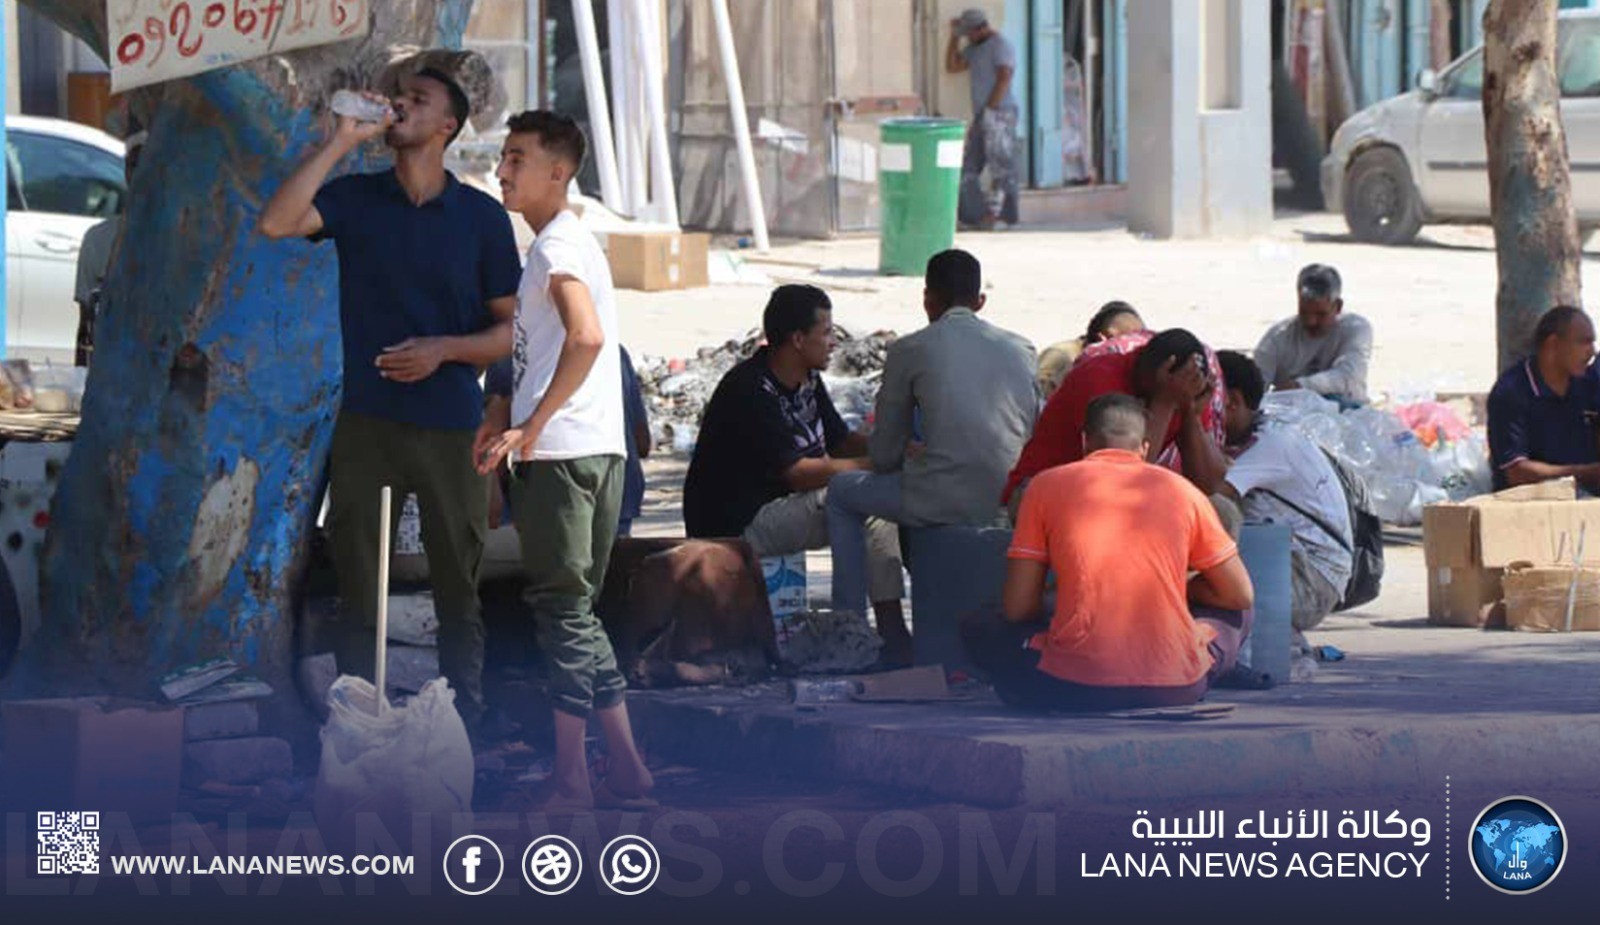  الأنباء الليبية : فيضان العمالة المصرية يتفاقم بسبب الانقسام السياسي وعدم السيطرة على الحدود